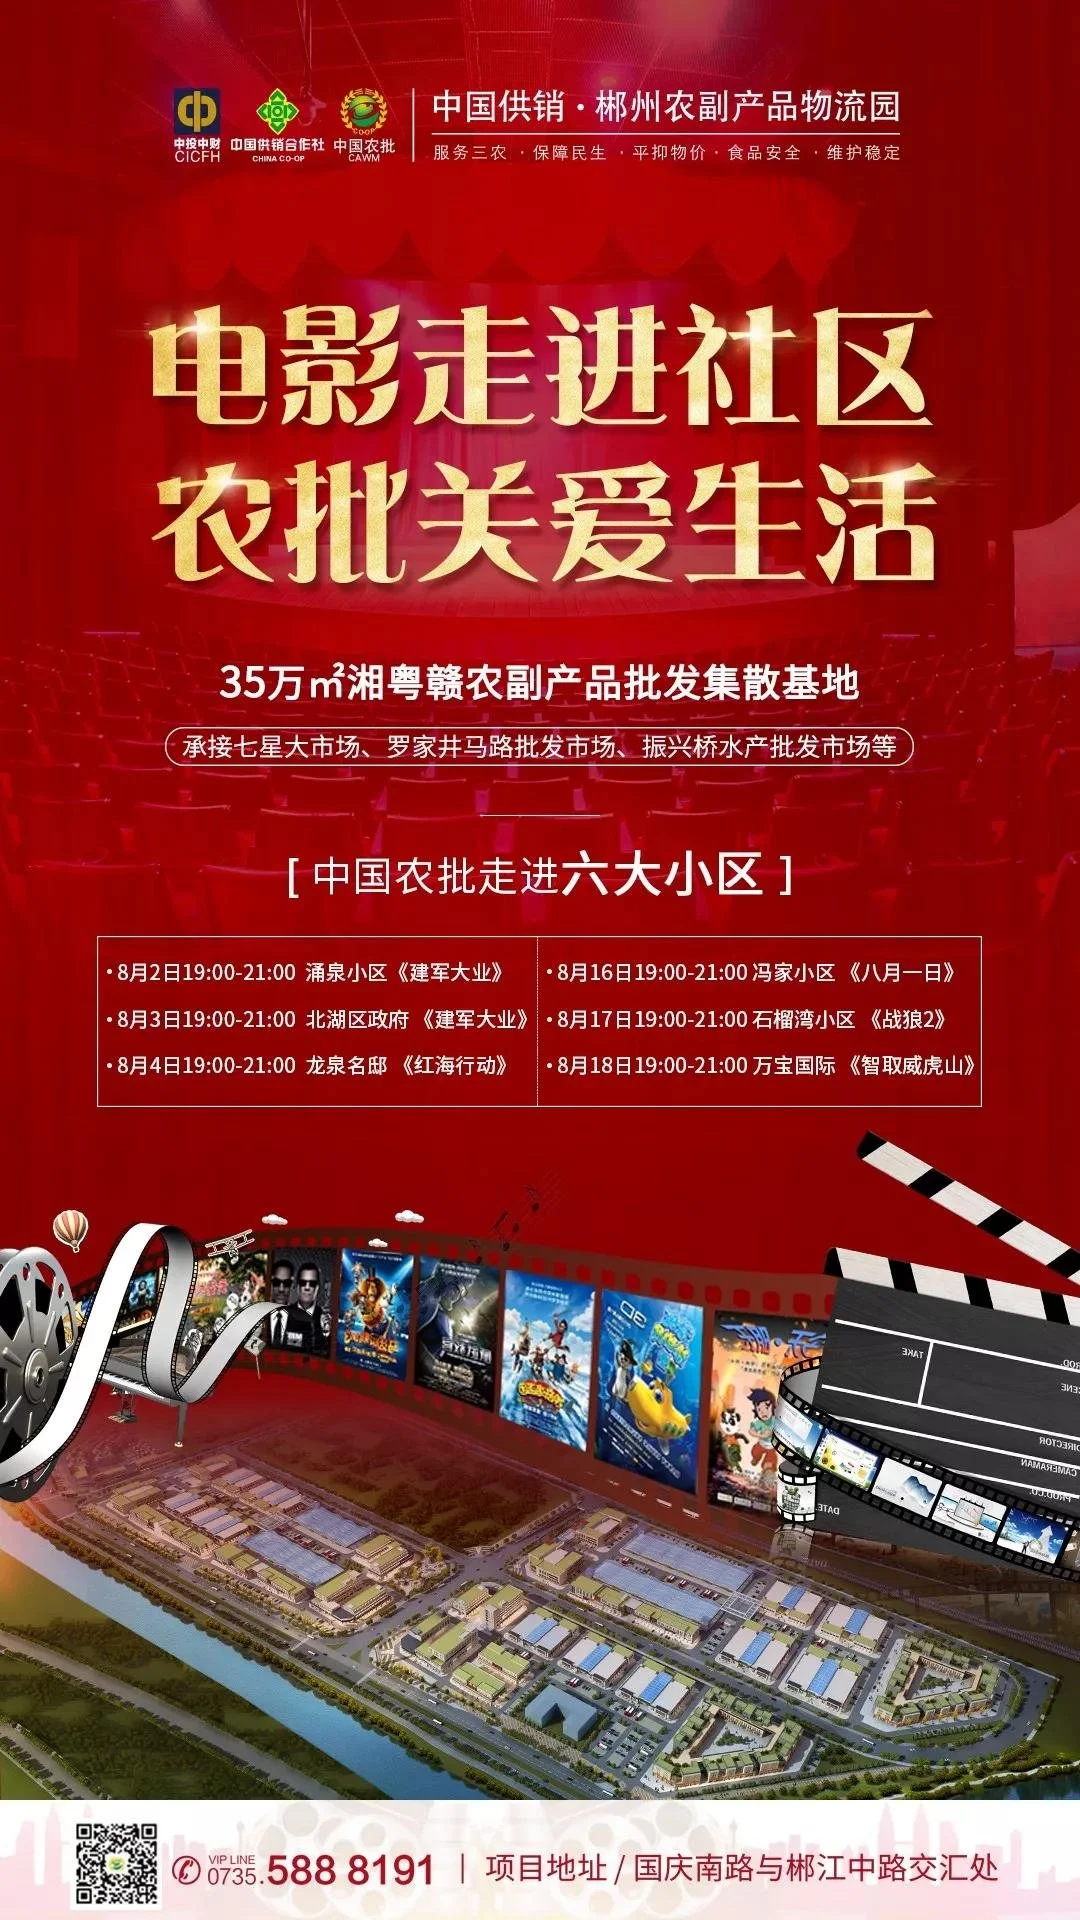 电影走进社区，中国供销·郴州农副产品物流园邀您看电影啦